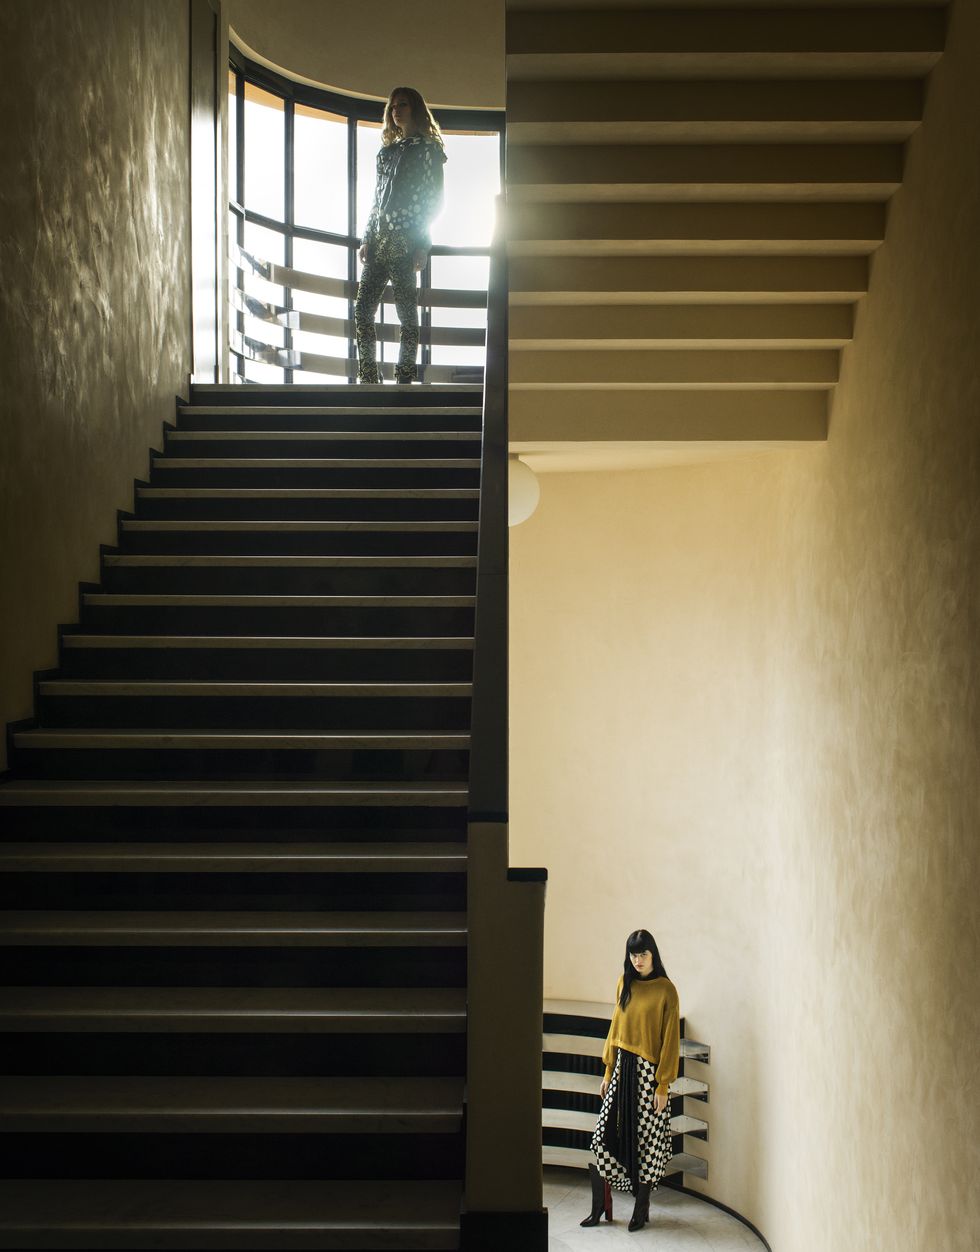 Louis Vuitton's Nicolas Ghesquière loves his creative freedom